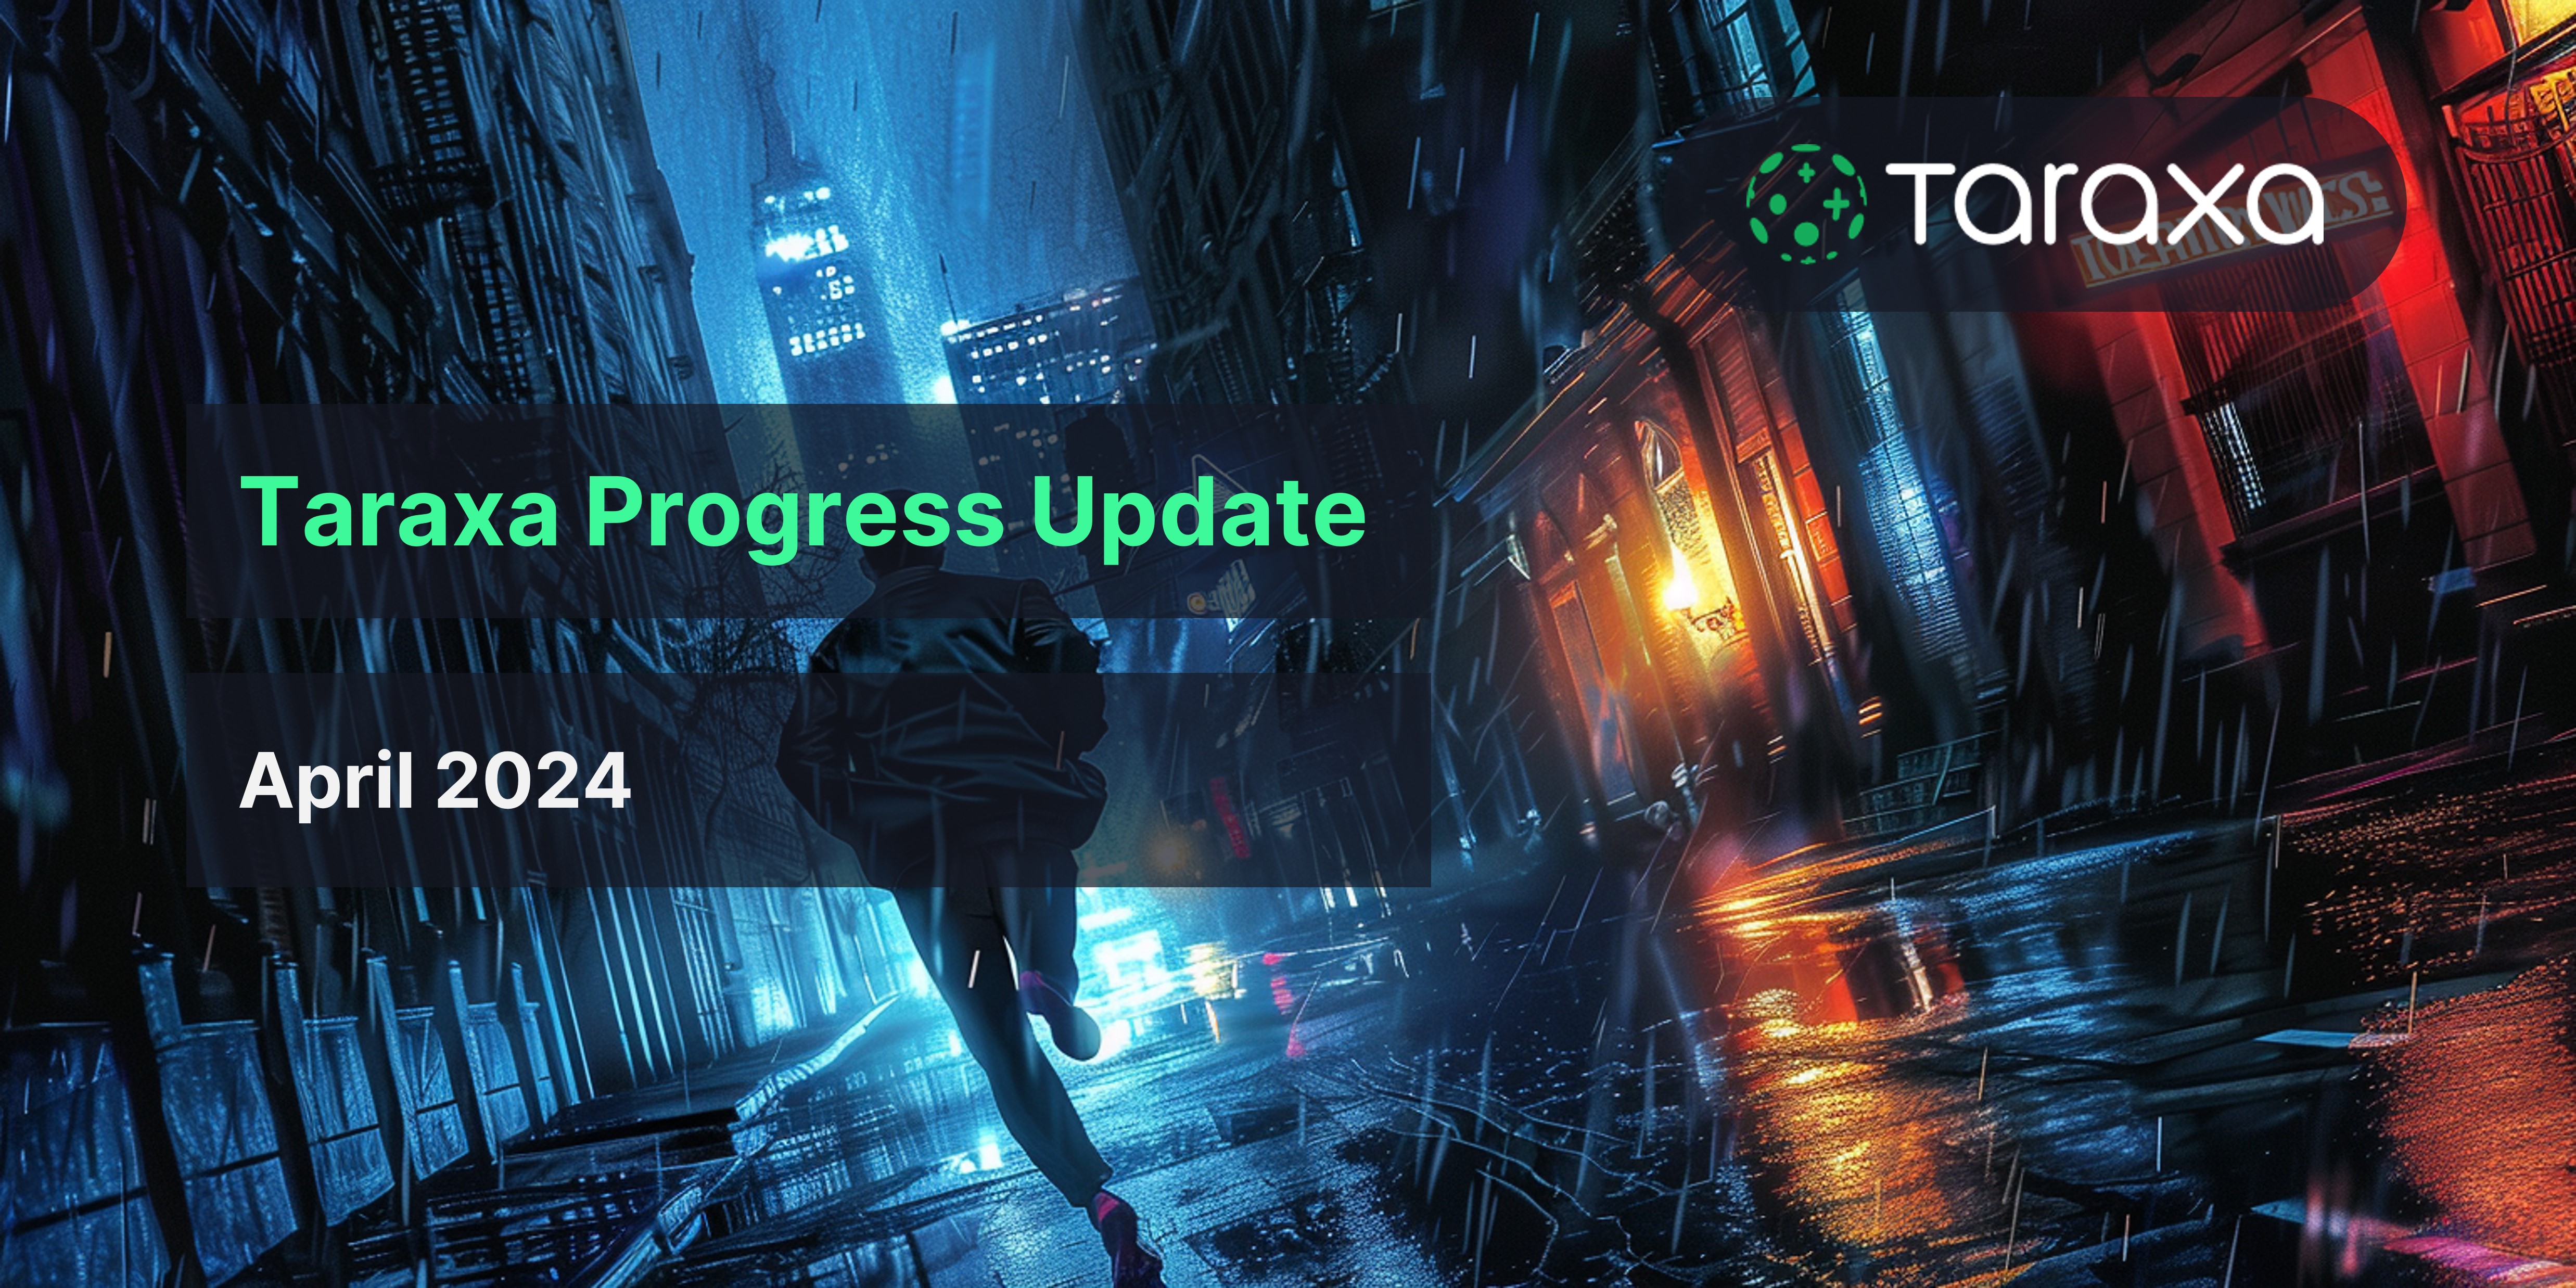 Taraxa Progress Update: April, 2024